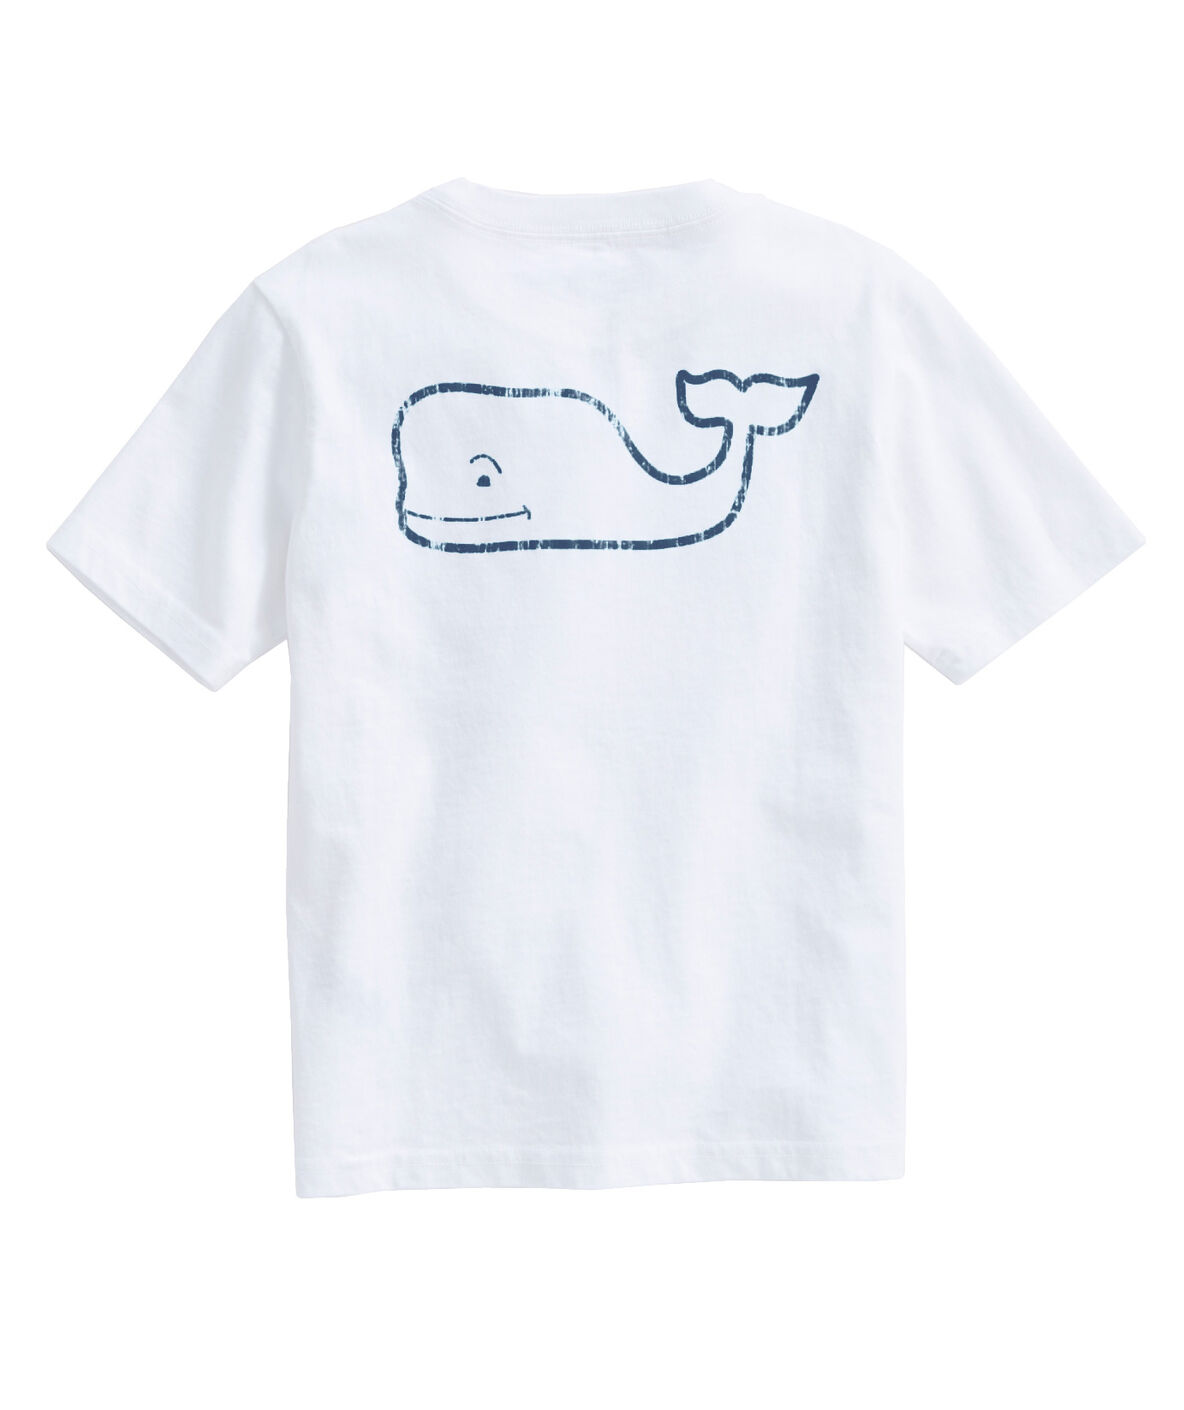 Shop Short-Sleeve Vintage Whale Pocket T-Shirt at vineyard vines